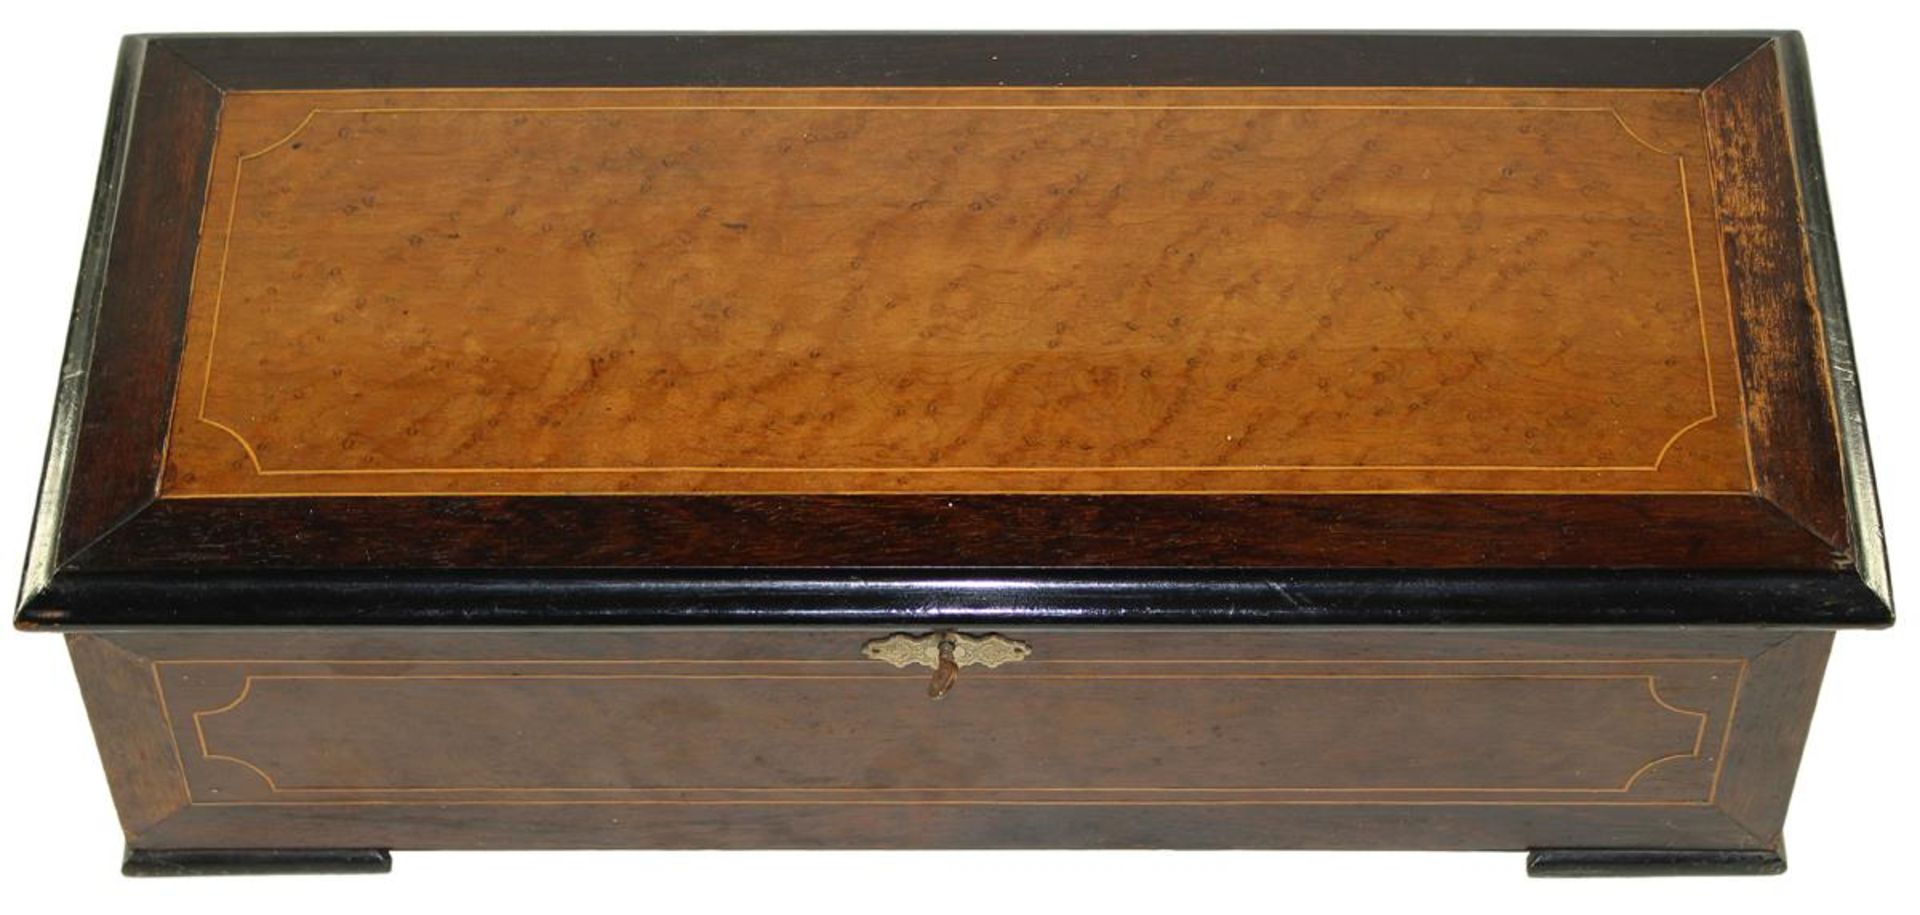 Walzenspieldose Baker Troll & Coum 1890. Seriennr. 14573. Bandintarsierter Holzkasten mit - Bild 3 aus 3